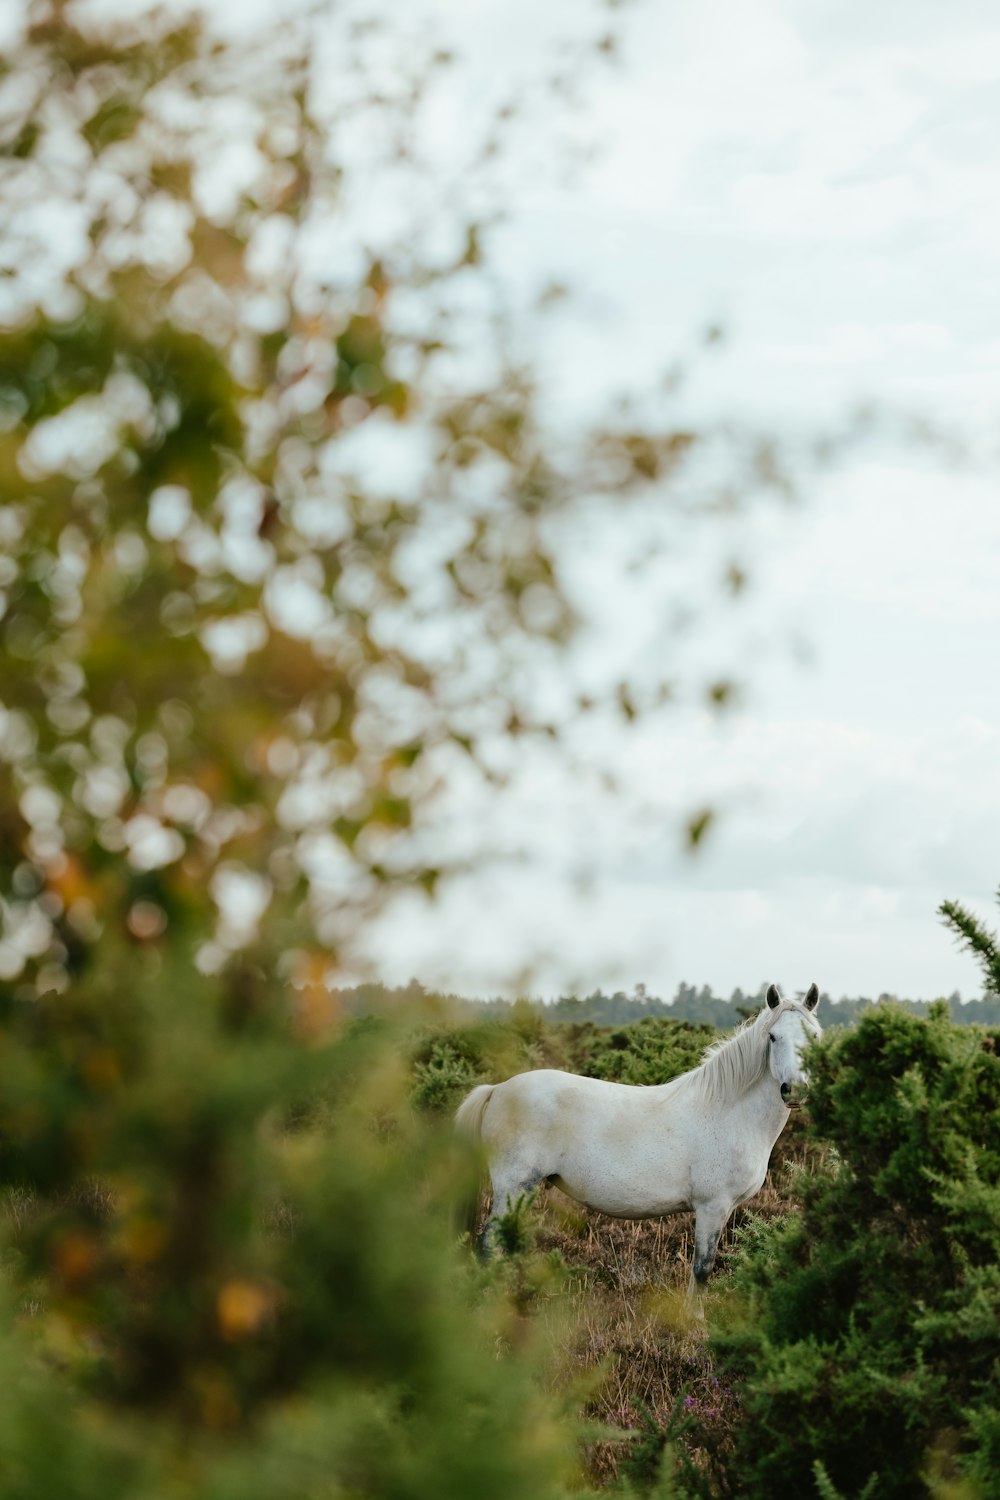 a white horse in a field